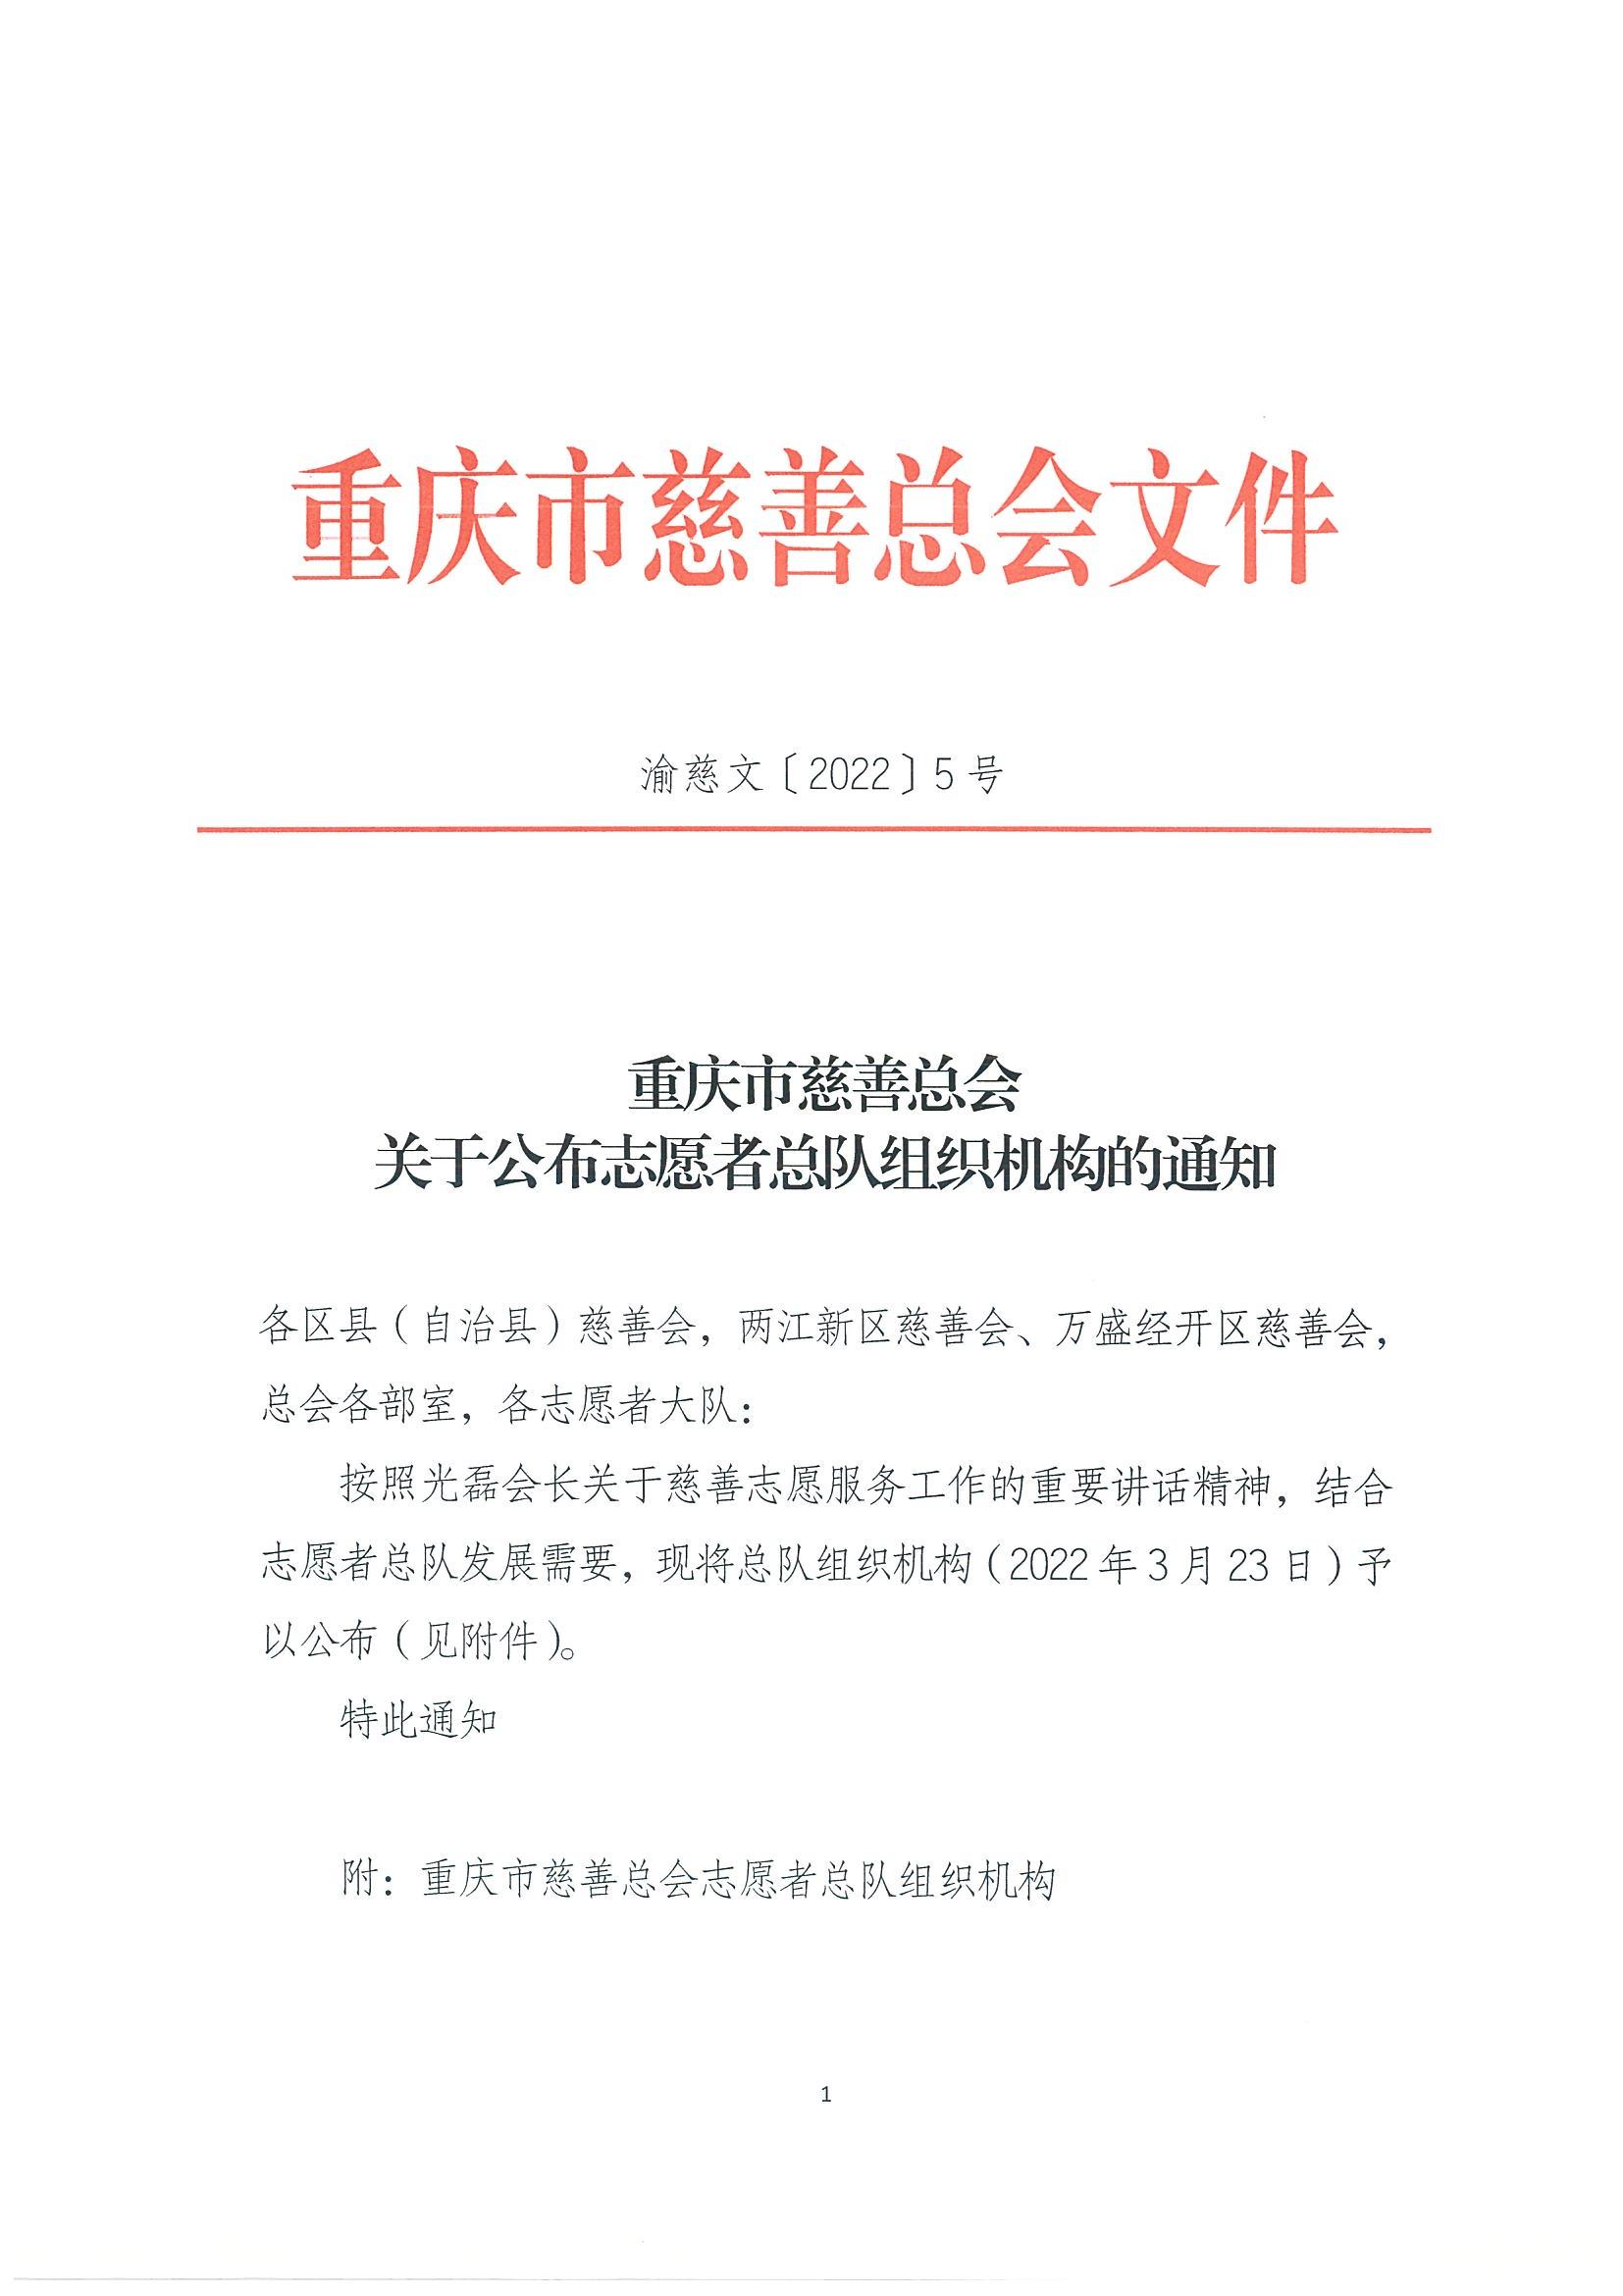 重慶市慈善總會關于公布志愿者總隊組織機構的通知_00.jpg